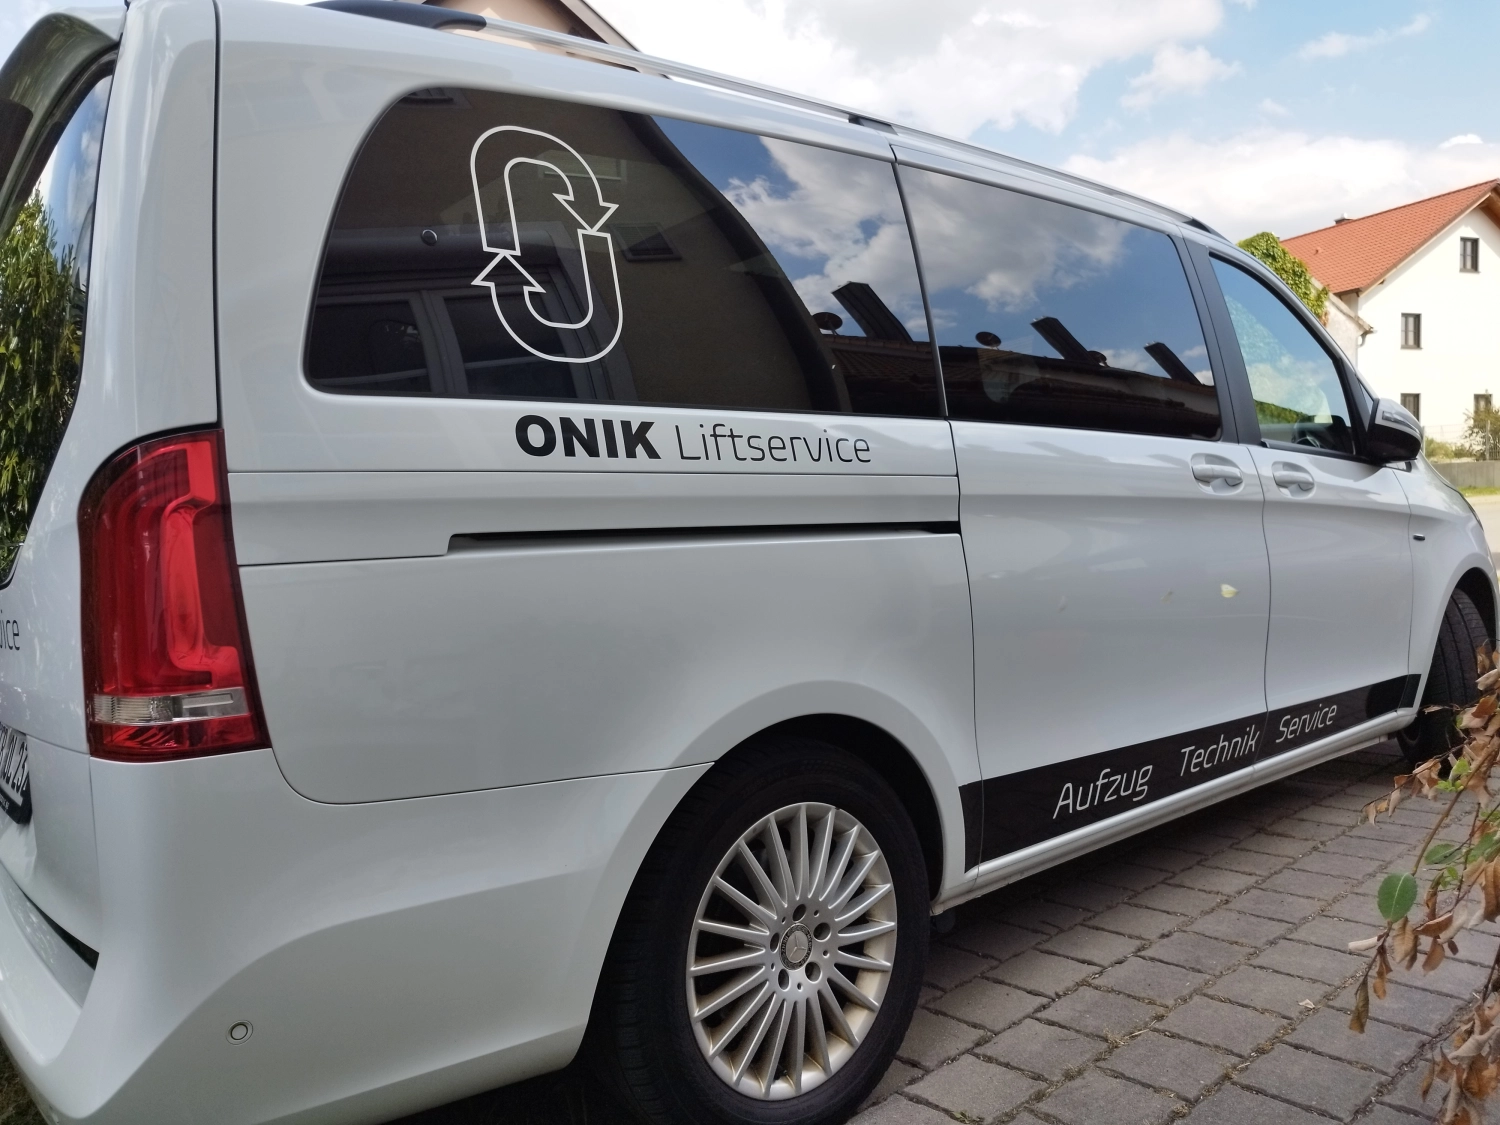 ONIK Liftservice Van